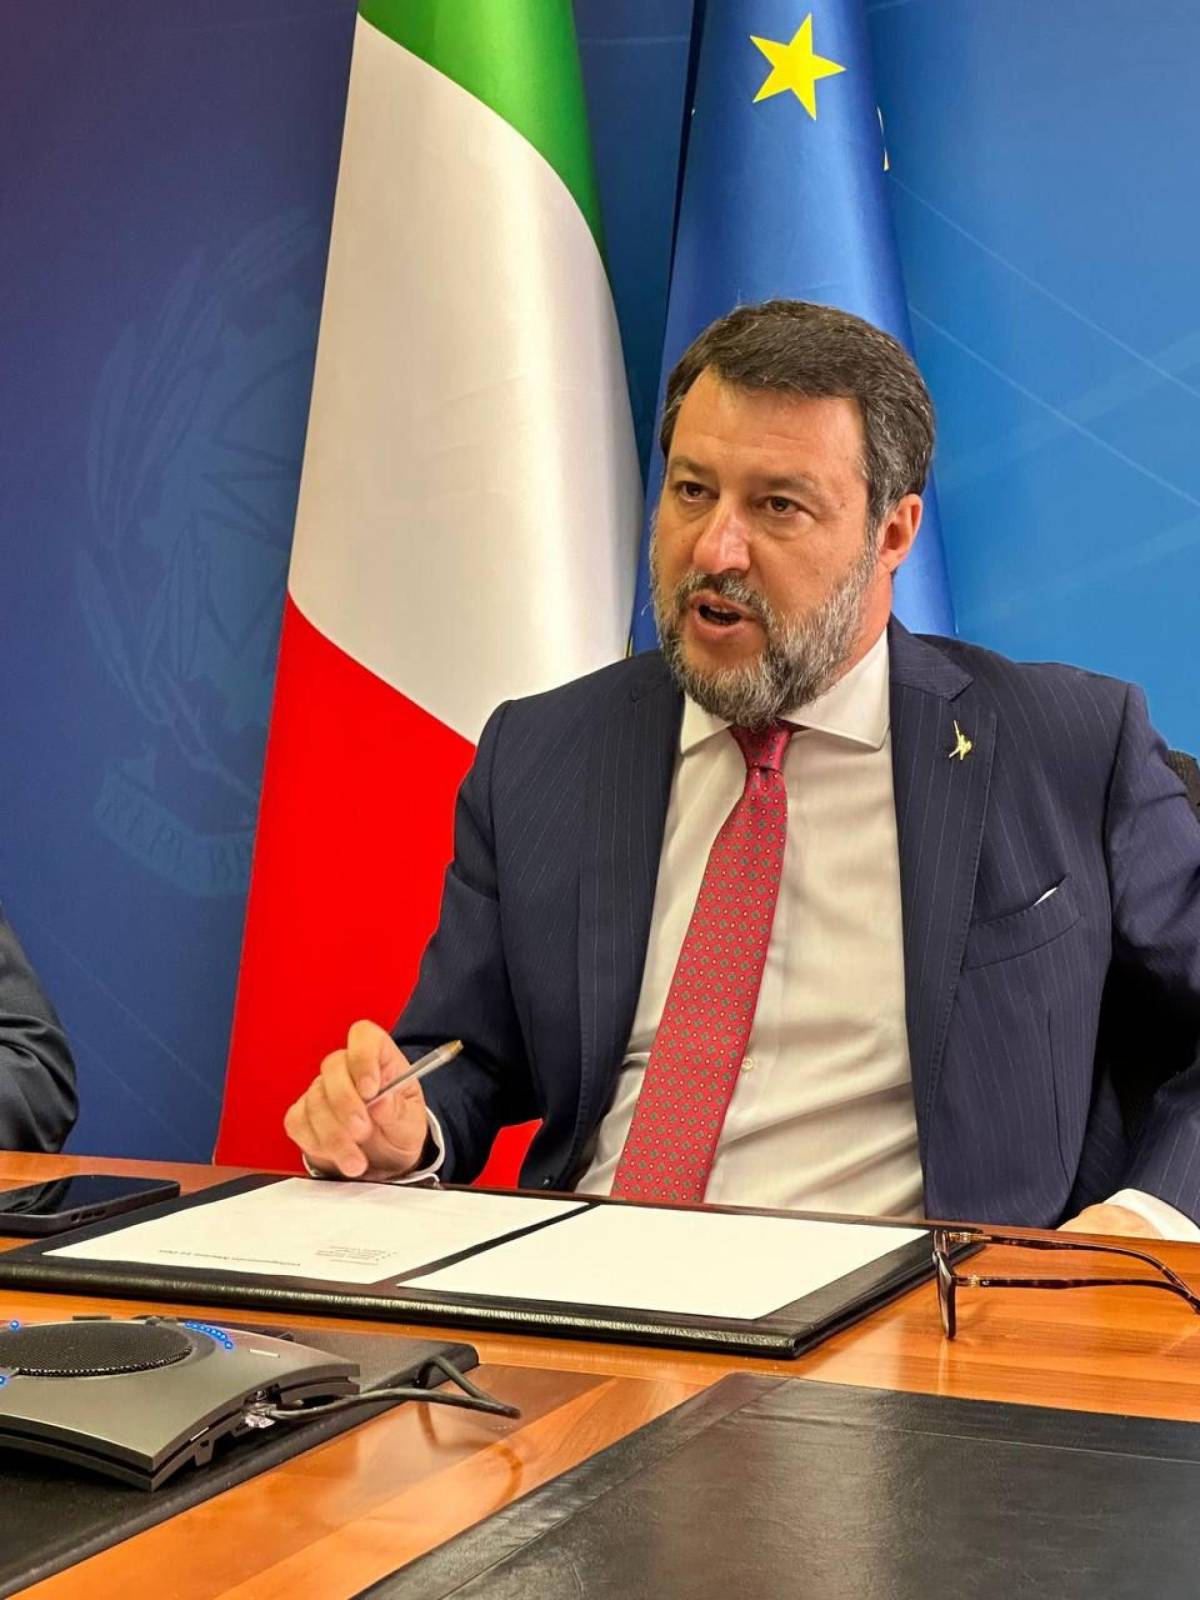 Salvini da "Capitano" a ministro del fare. Così i sondaggi premiano il leader leghista